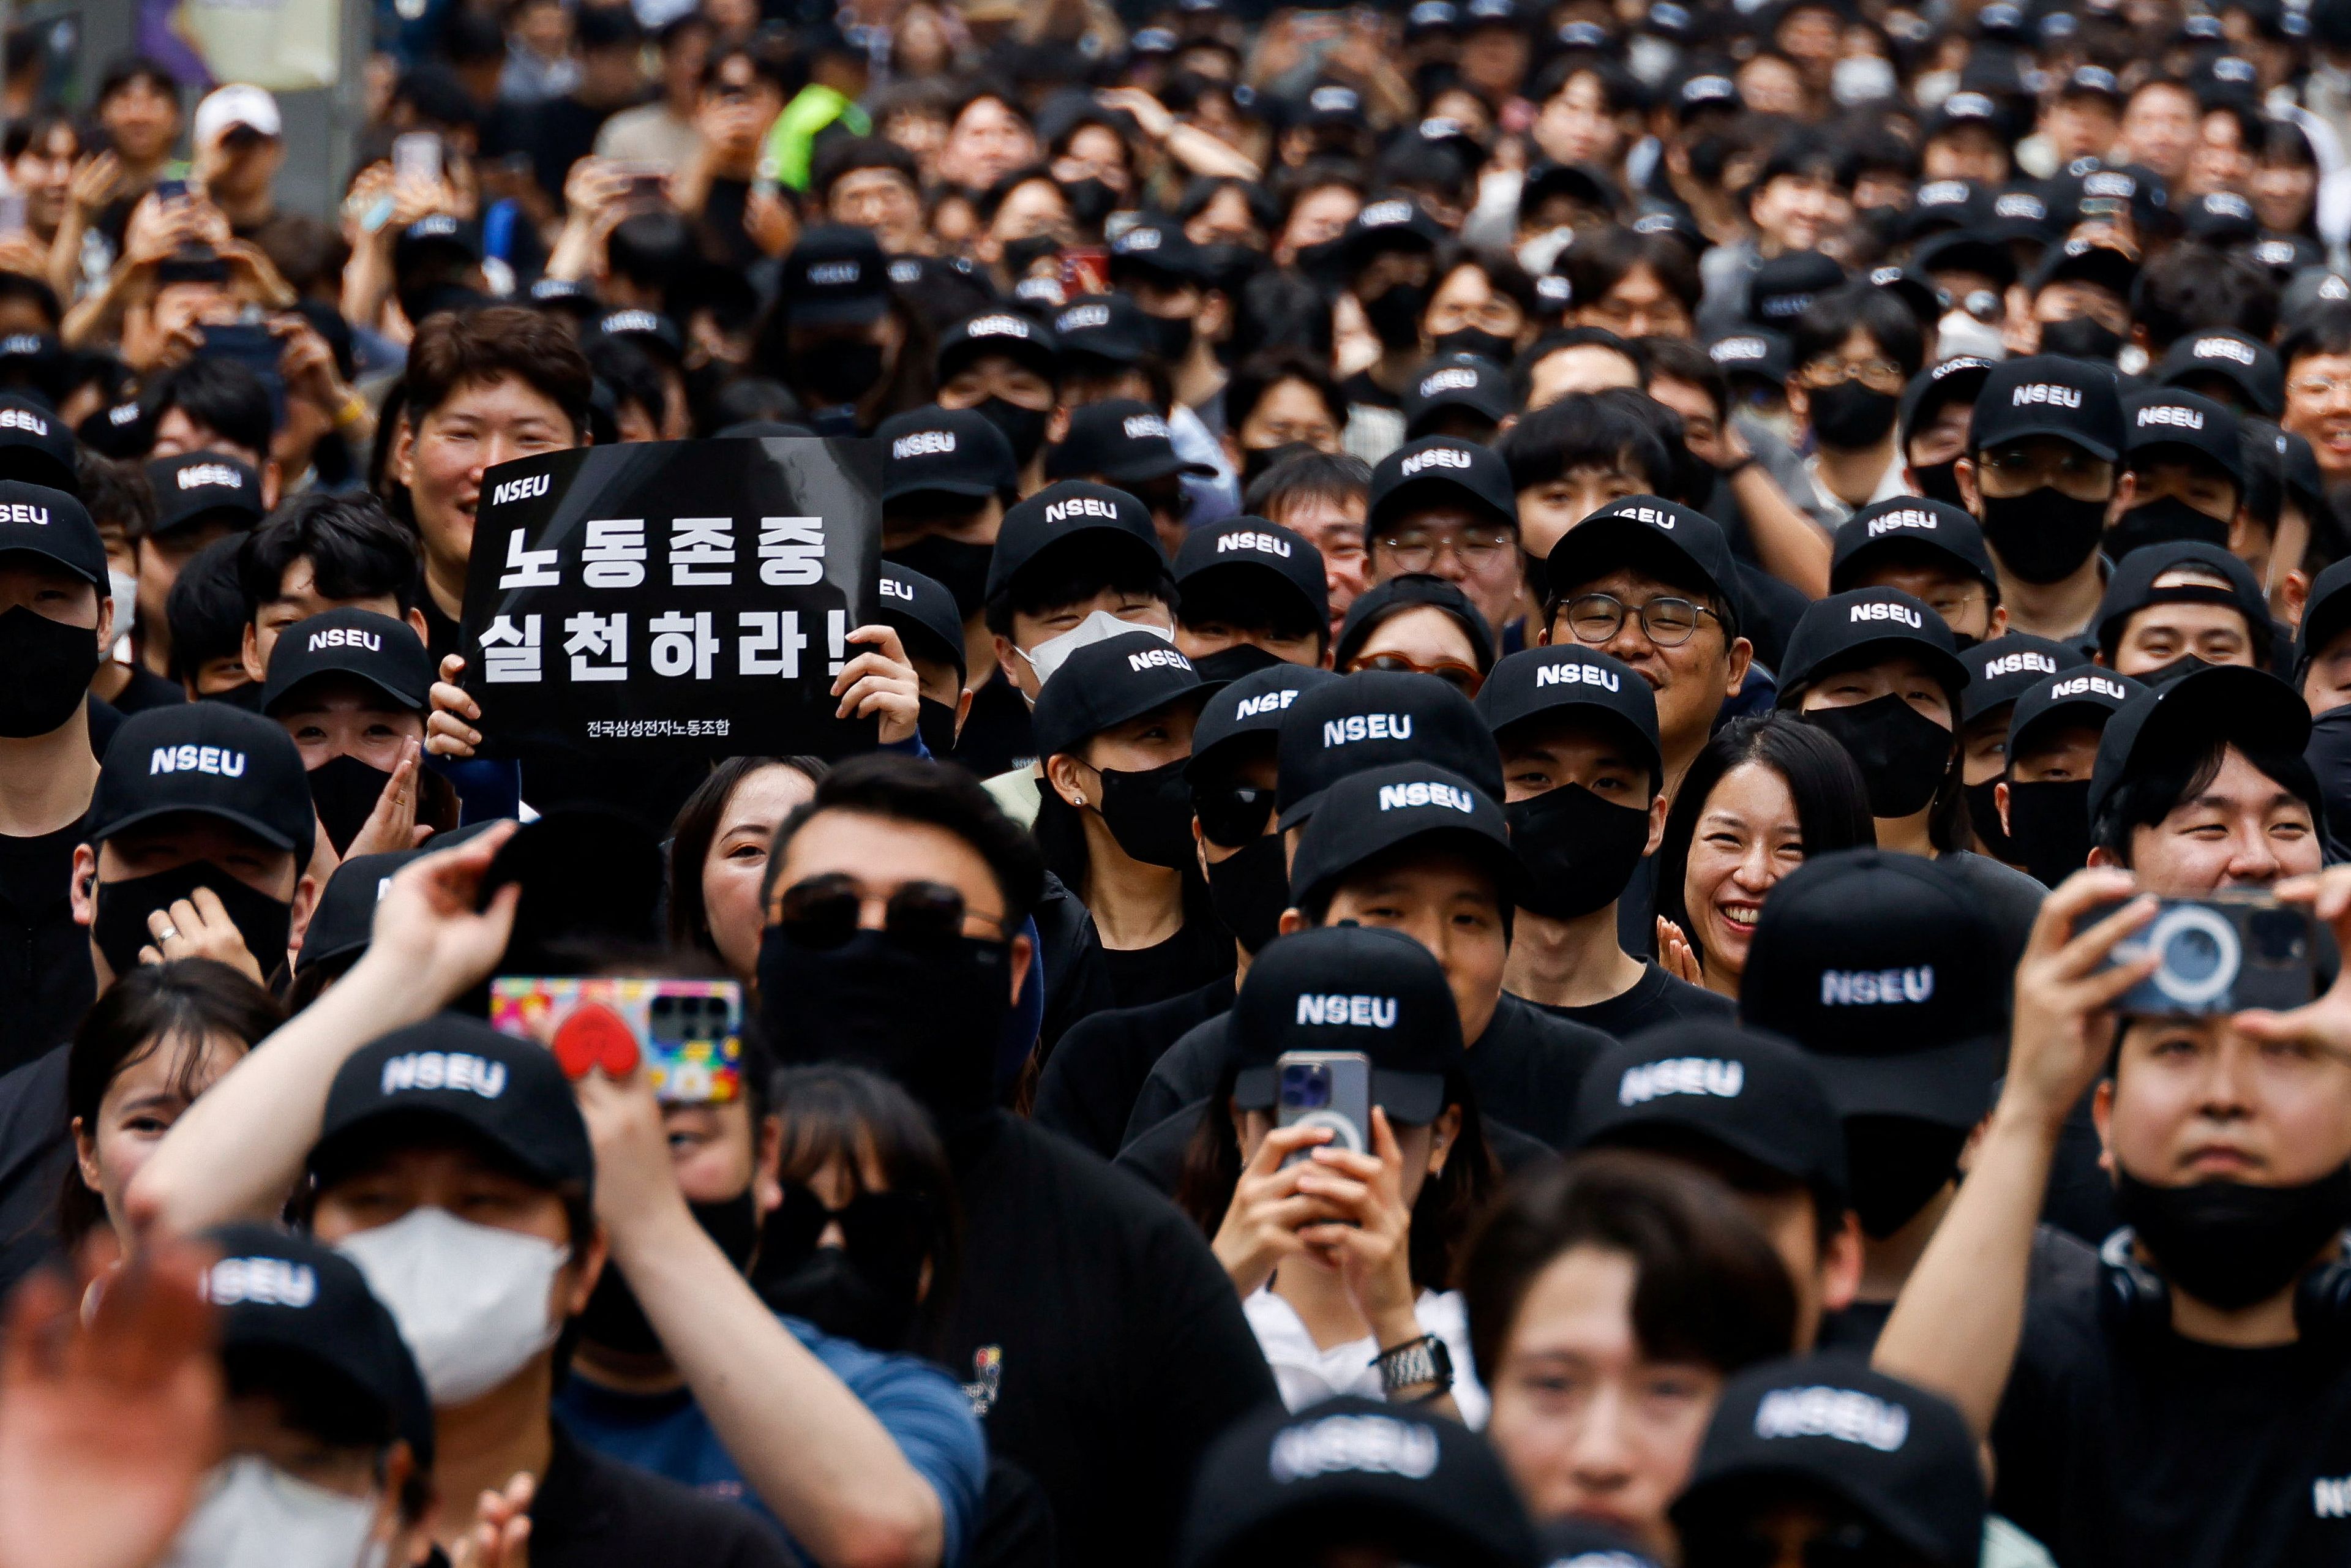 El Sindicato Nacional de Samsung Electronics (NSEU) celebra en Seúl una protesta por un trato justo el viernes 24 de mayo.